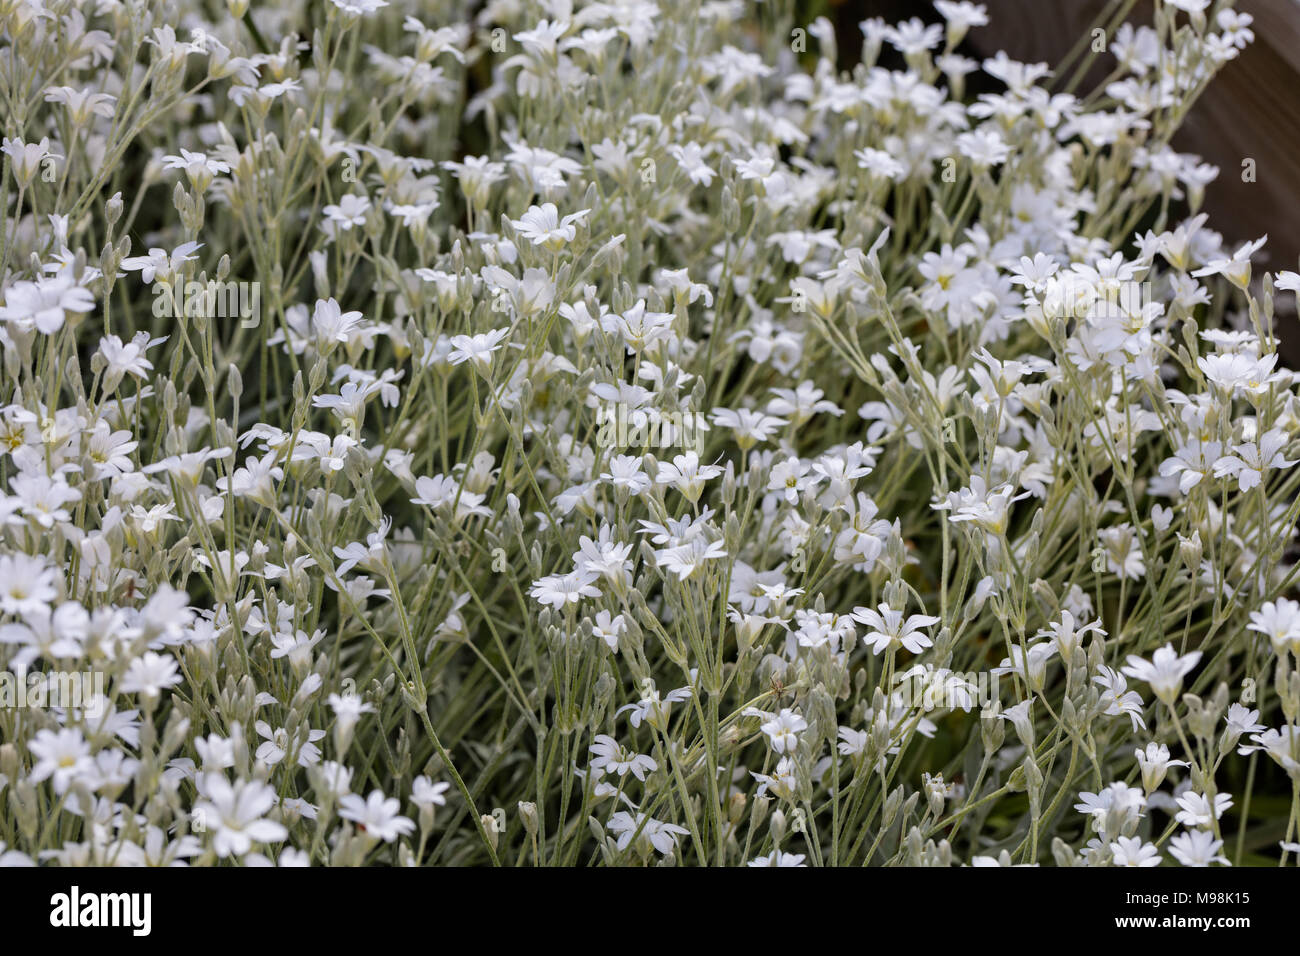 Snow-in-summer, Silverarv (Cerastium tomentosum) Stock Photo